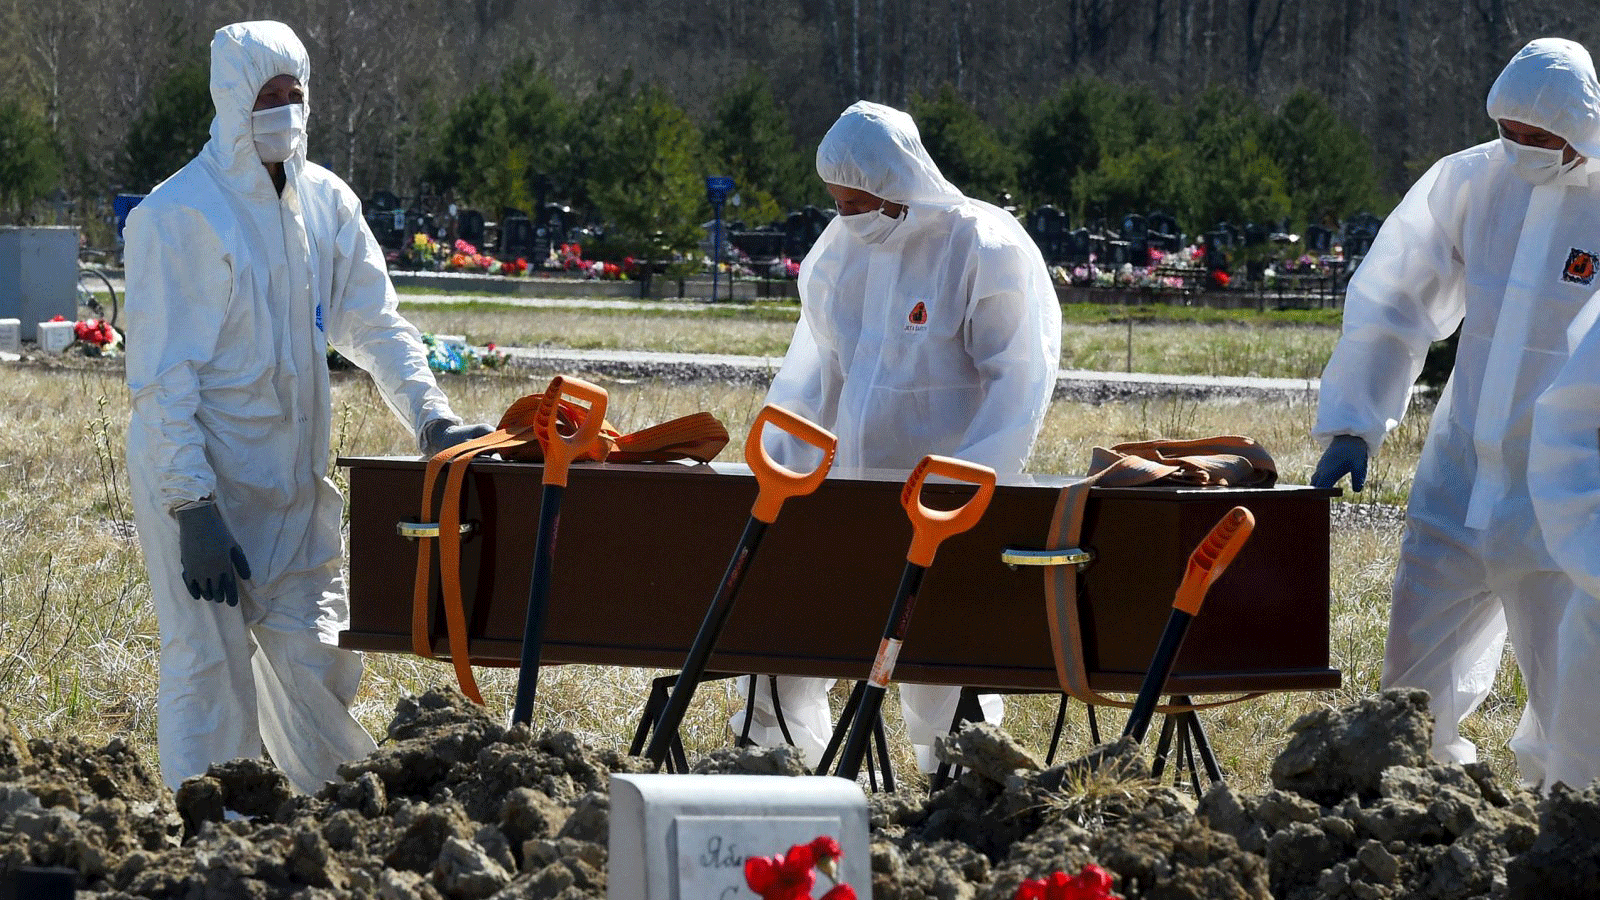 عمال مقبرة يرتدون معدات واقية أثناء دفن ضحية فيروس كورونا في إحدى مقابر ضواحي سانت بطرسبرغ، روسيا، 6 أيار/ مايو، 2020